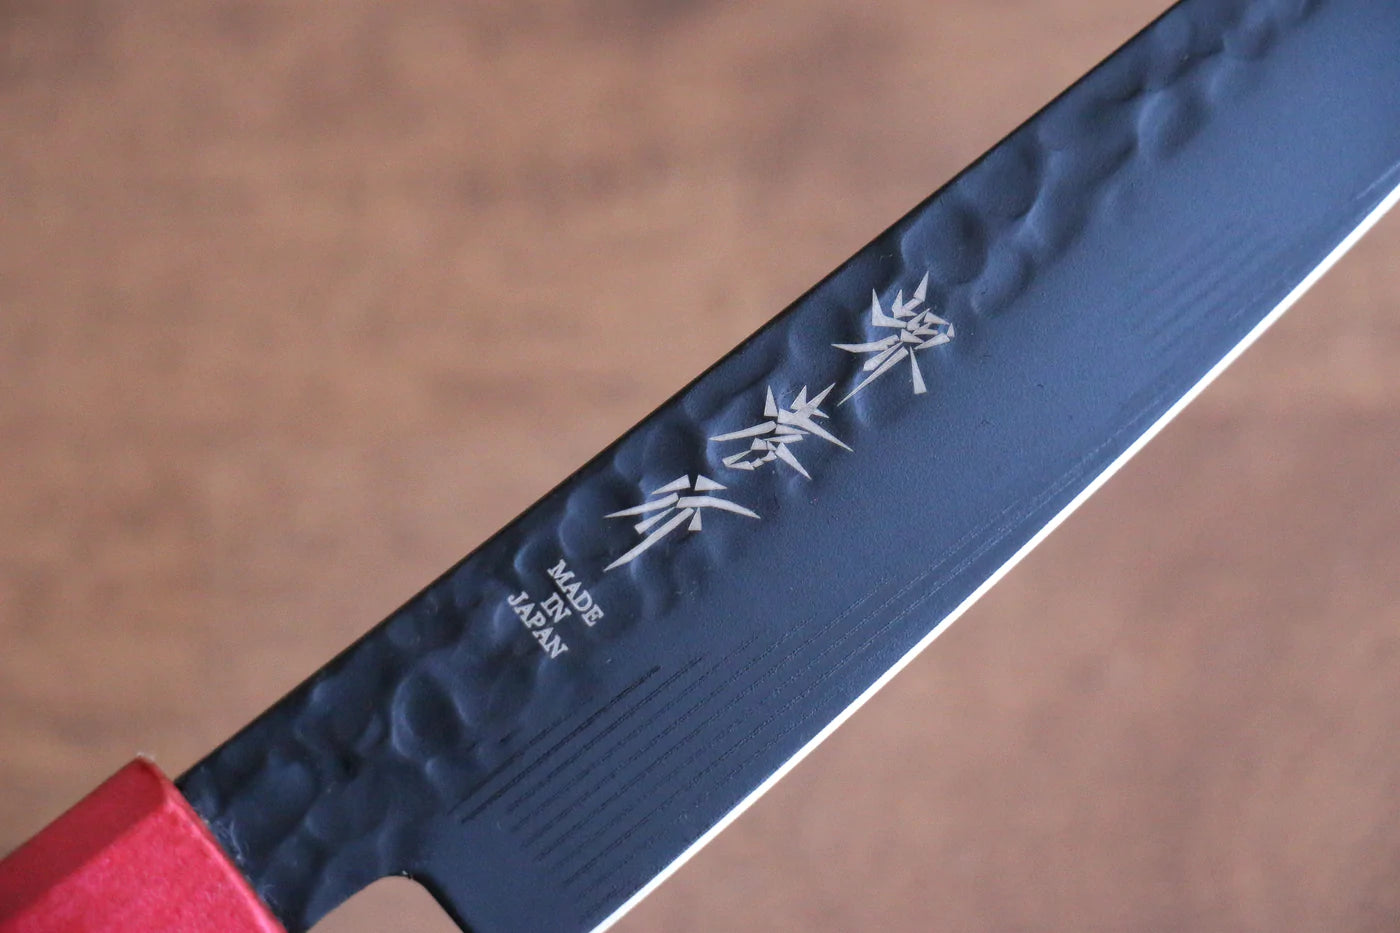 Marke Sakai Takayuki Black Shadow Kurokage VG10 Handgeschmiedetes, teflonbeschichtetes kleines Mehrzweckmesser Kleines japanisches Messer 150 mm lackierter Eichengriff (Kouseki)